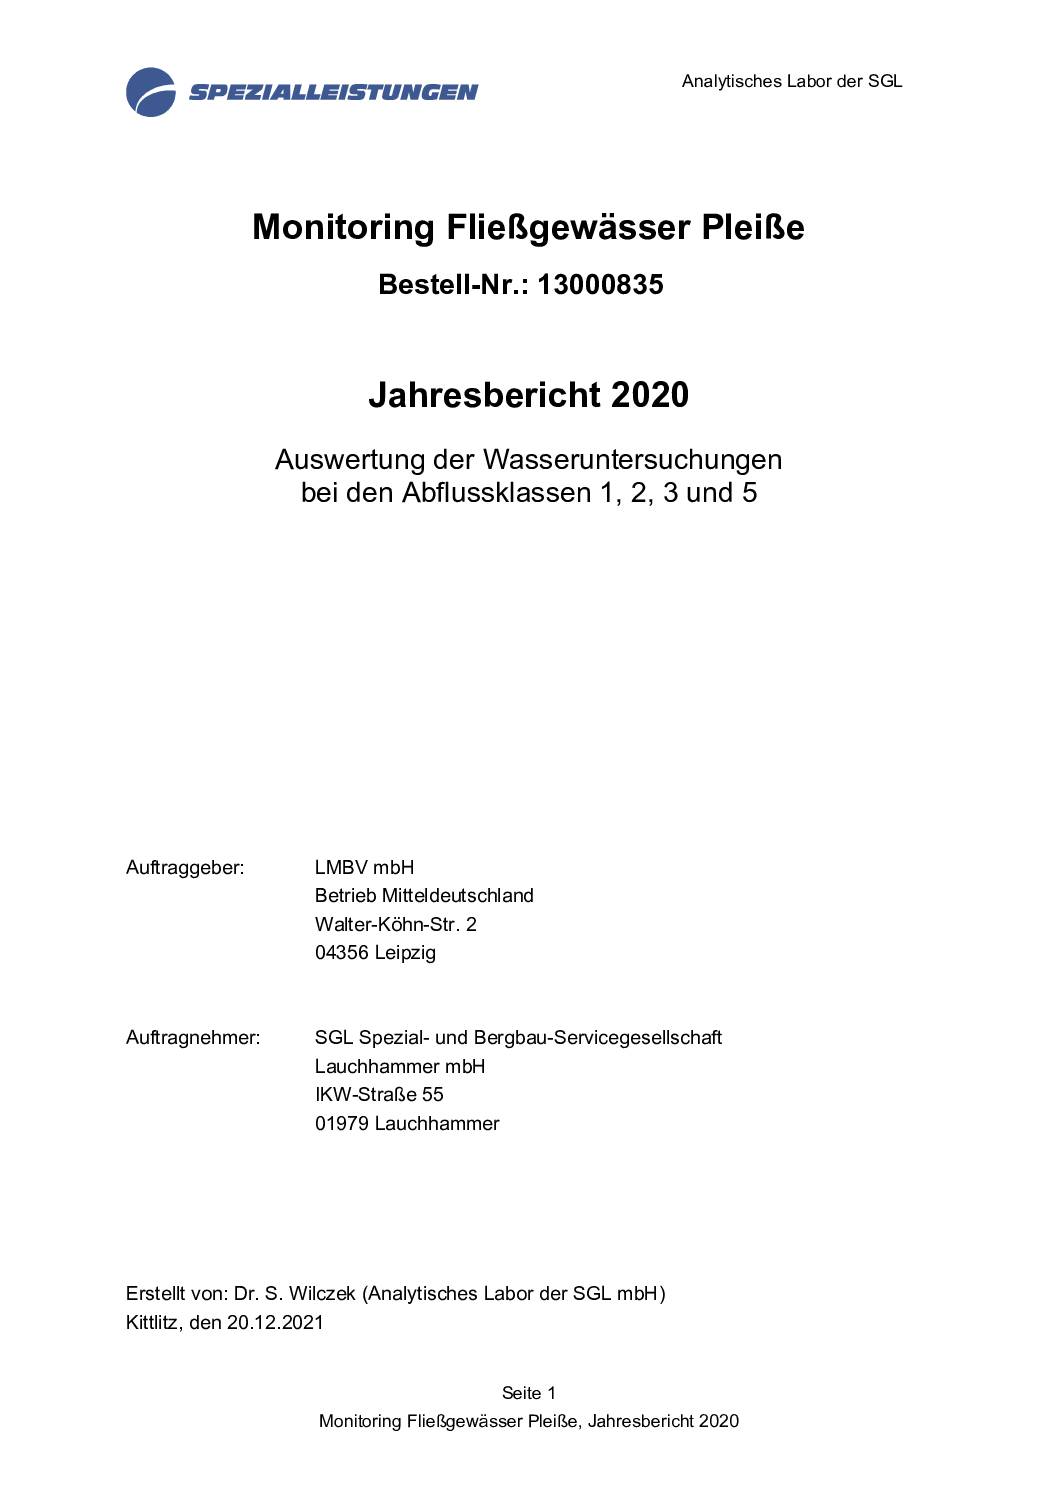 Bericht Monitoring Fliessgewaesser Pleisse 2020 inkl. Anl. 1 Anl. 2 pdf